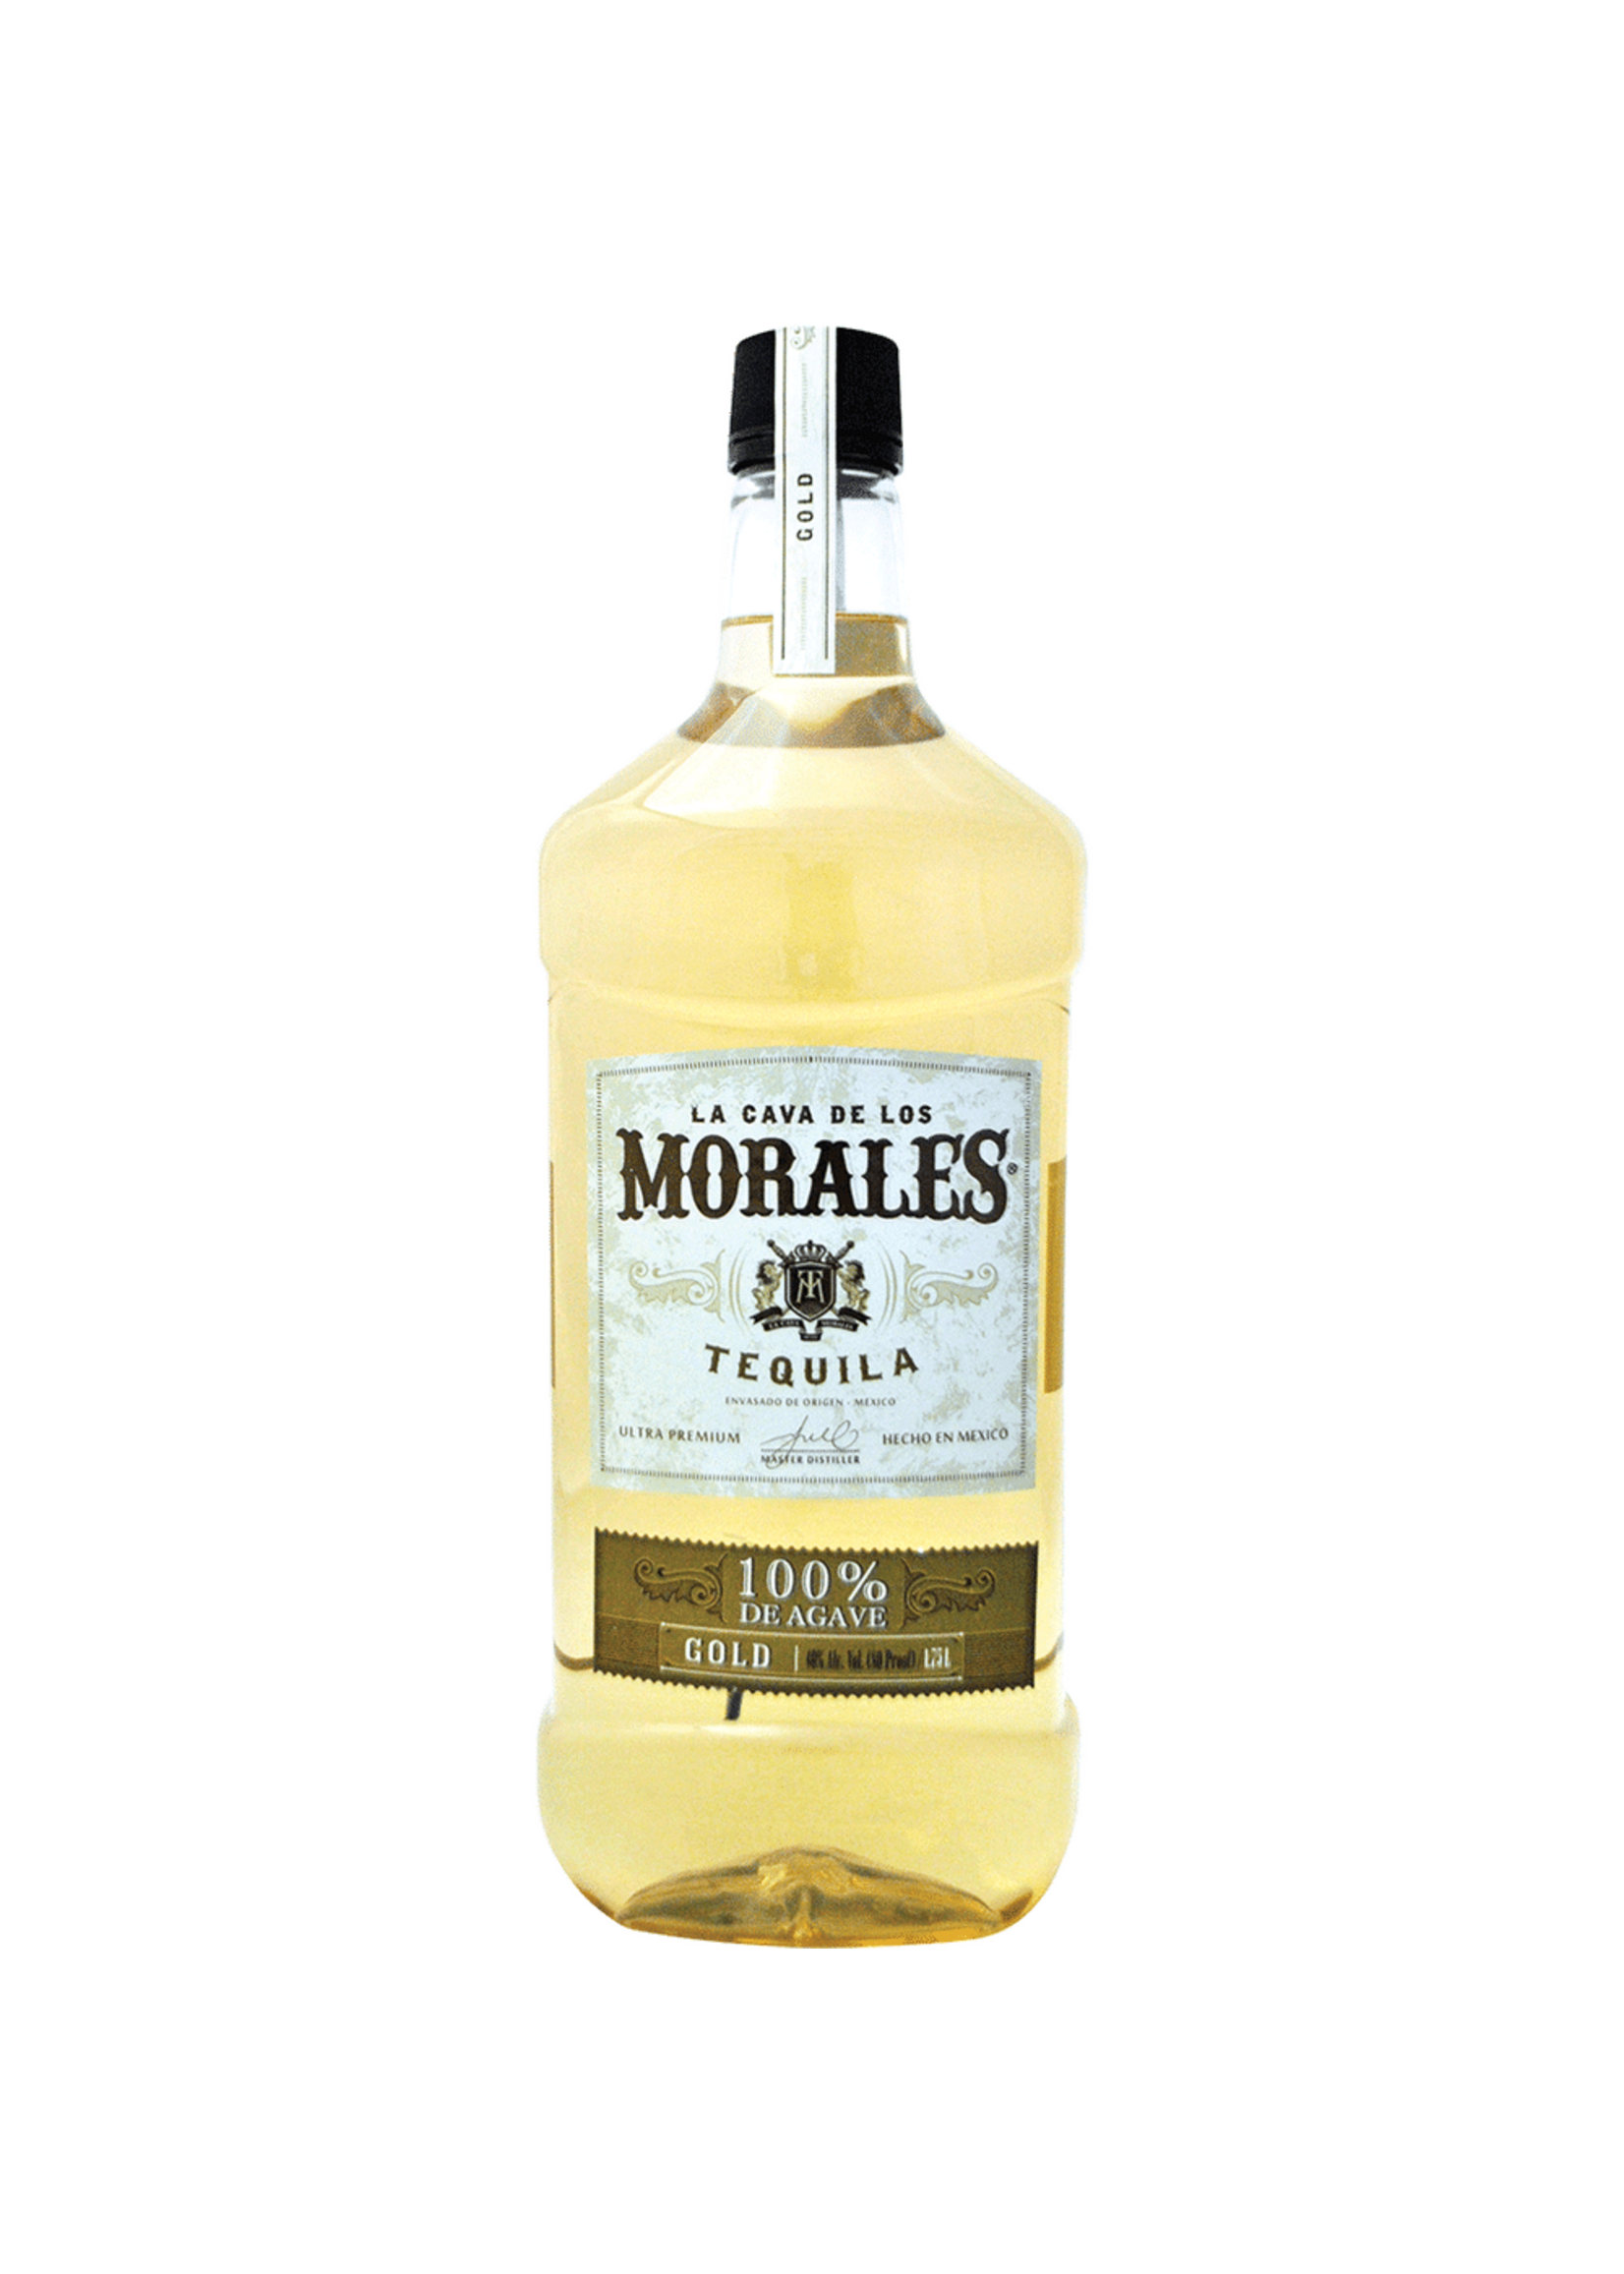 La Cava Morales Gold Tequila 80Proof Pet 1.75 Ltr